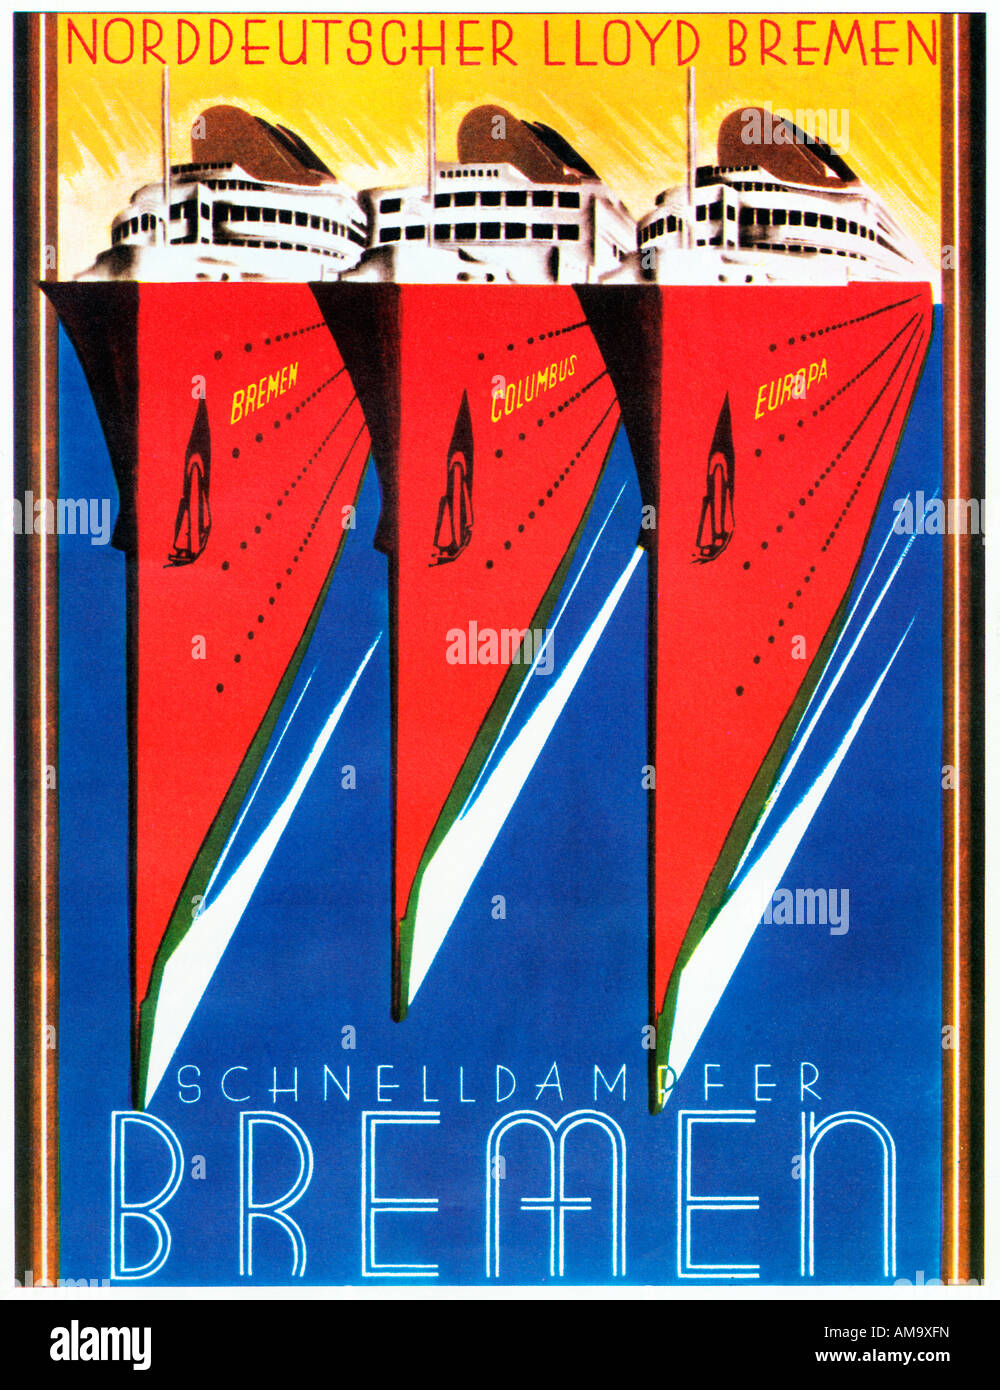 Schnelldampfer Bremen 1930er Jahre Art-Deco-Plakat für die schnelle Dampfer Trans Atlantic Liniendienst von Norddeutscher Lloyd Bremen laufen Stockfoto